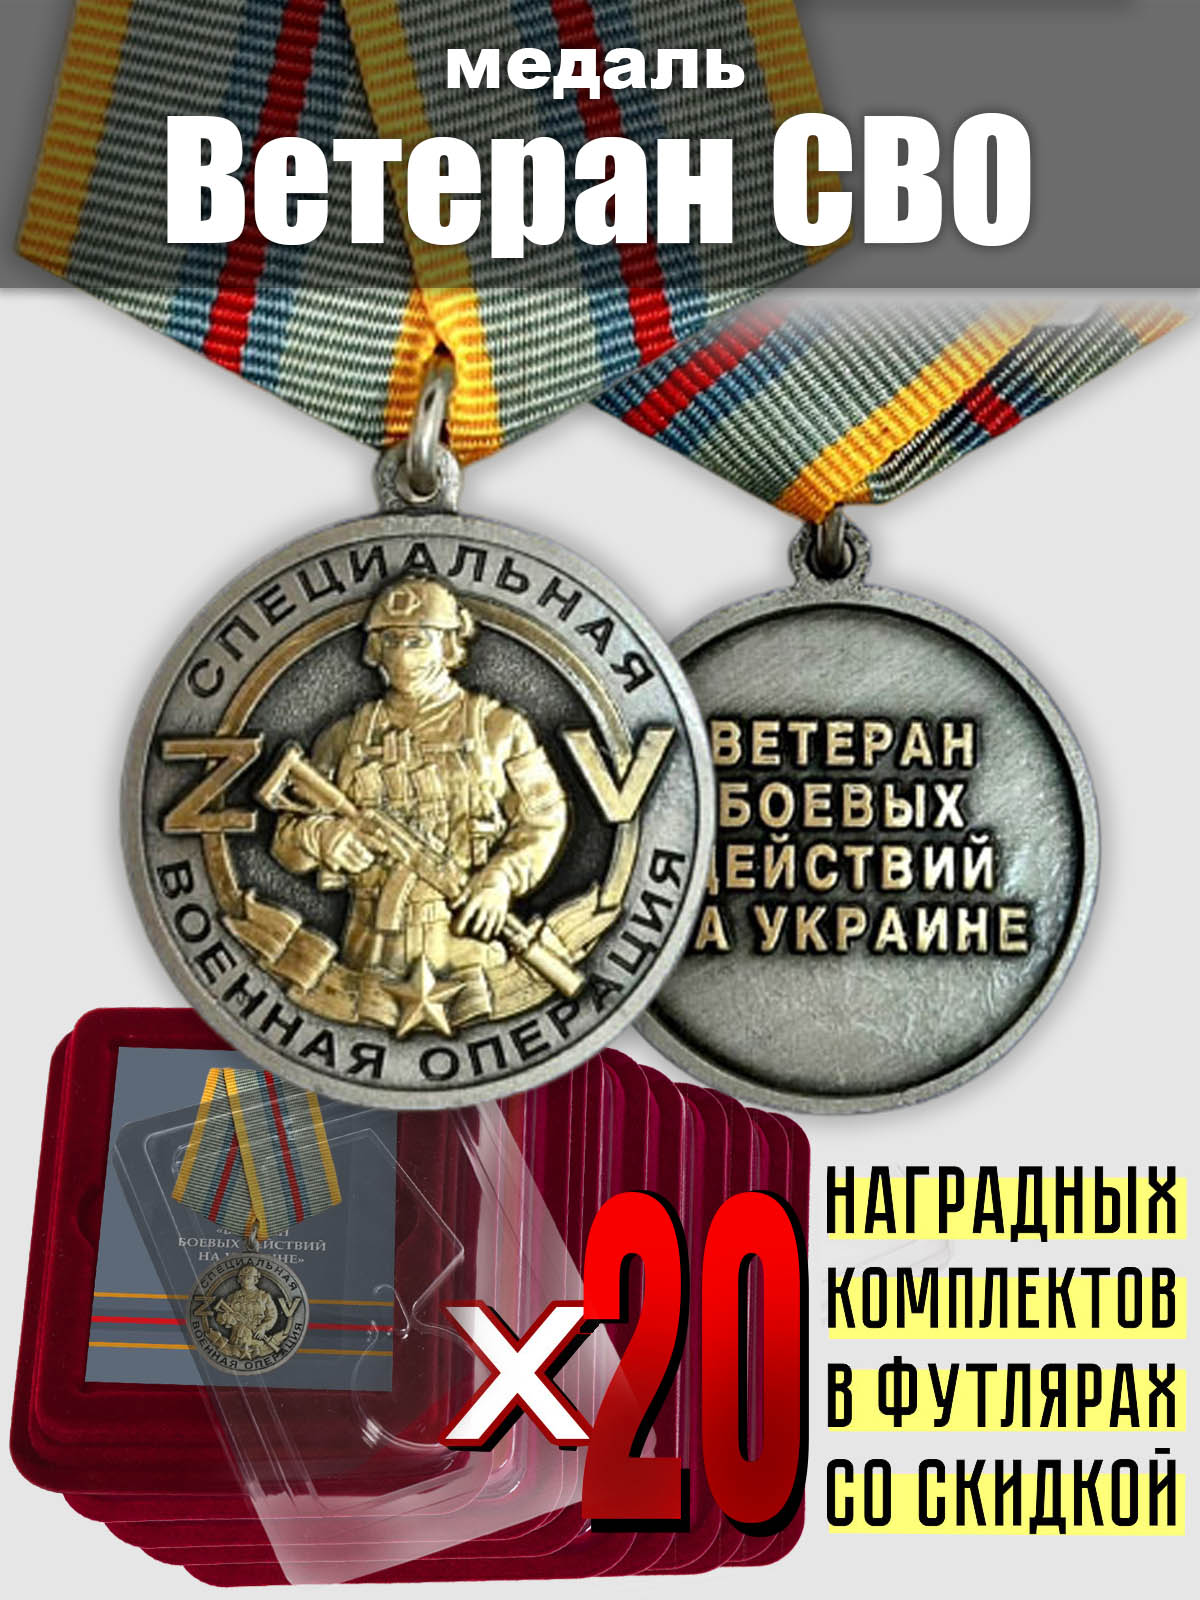 Комплект: медали "Ветеран СВО" (20 шт.)